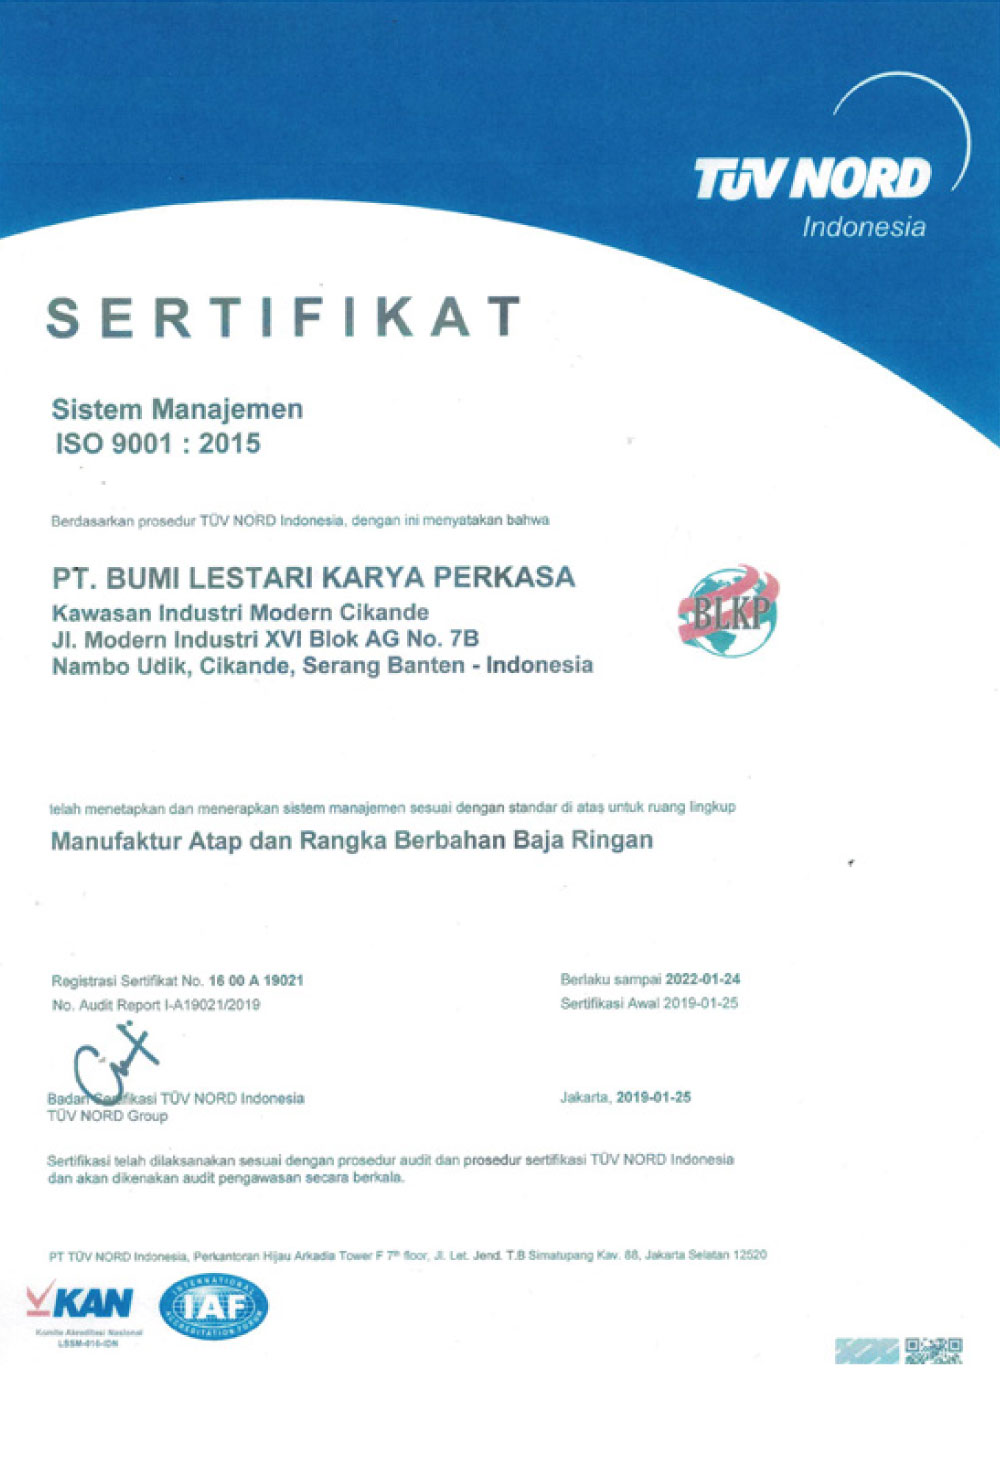 Sertifikat Manajemen ISO 9001 : 2015 PT. Bumi Lestari Karya Perkasa dari TUV NORD.